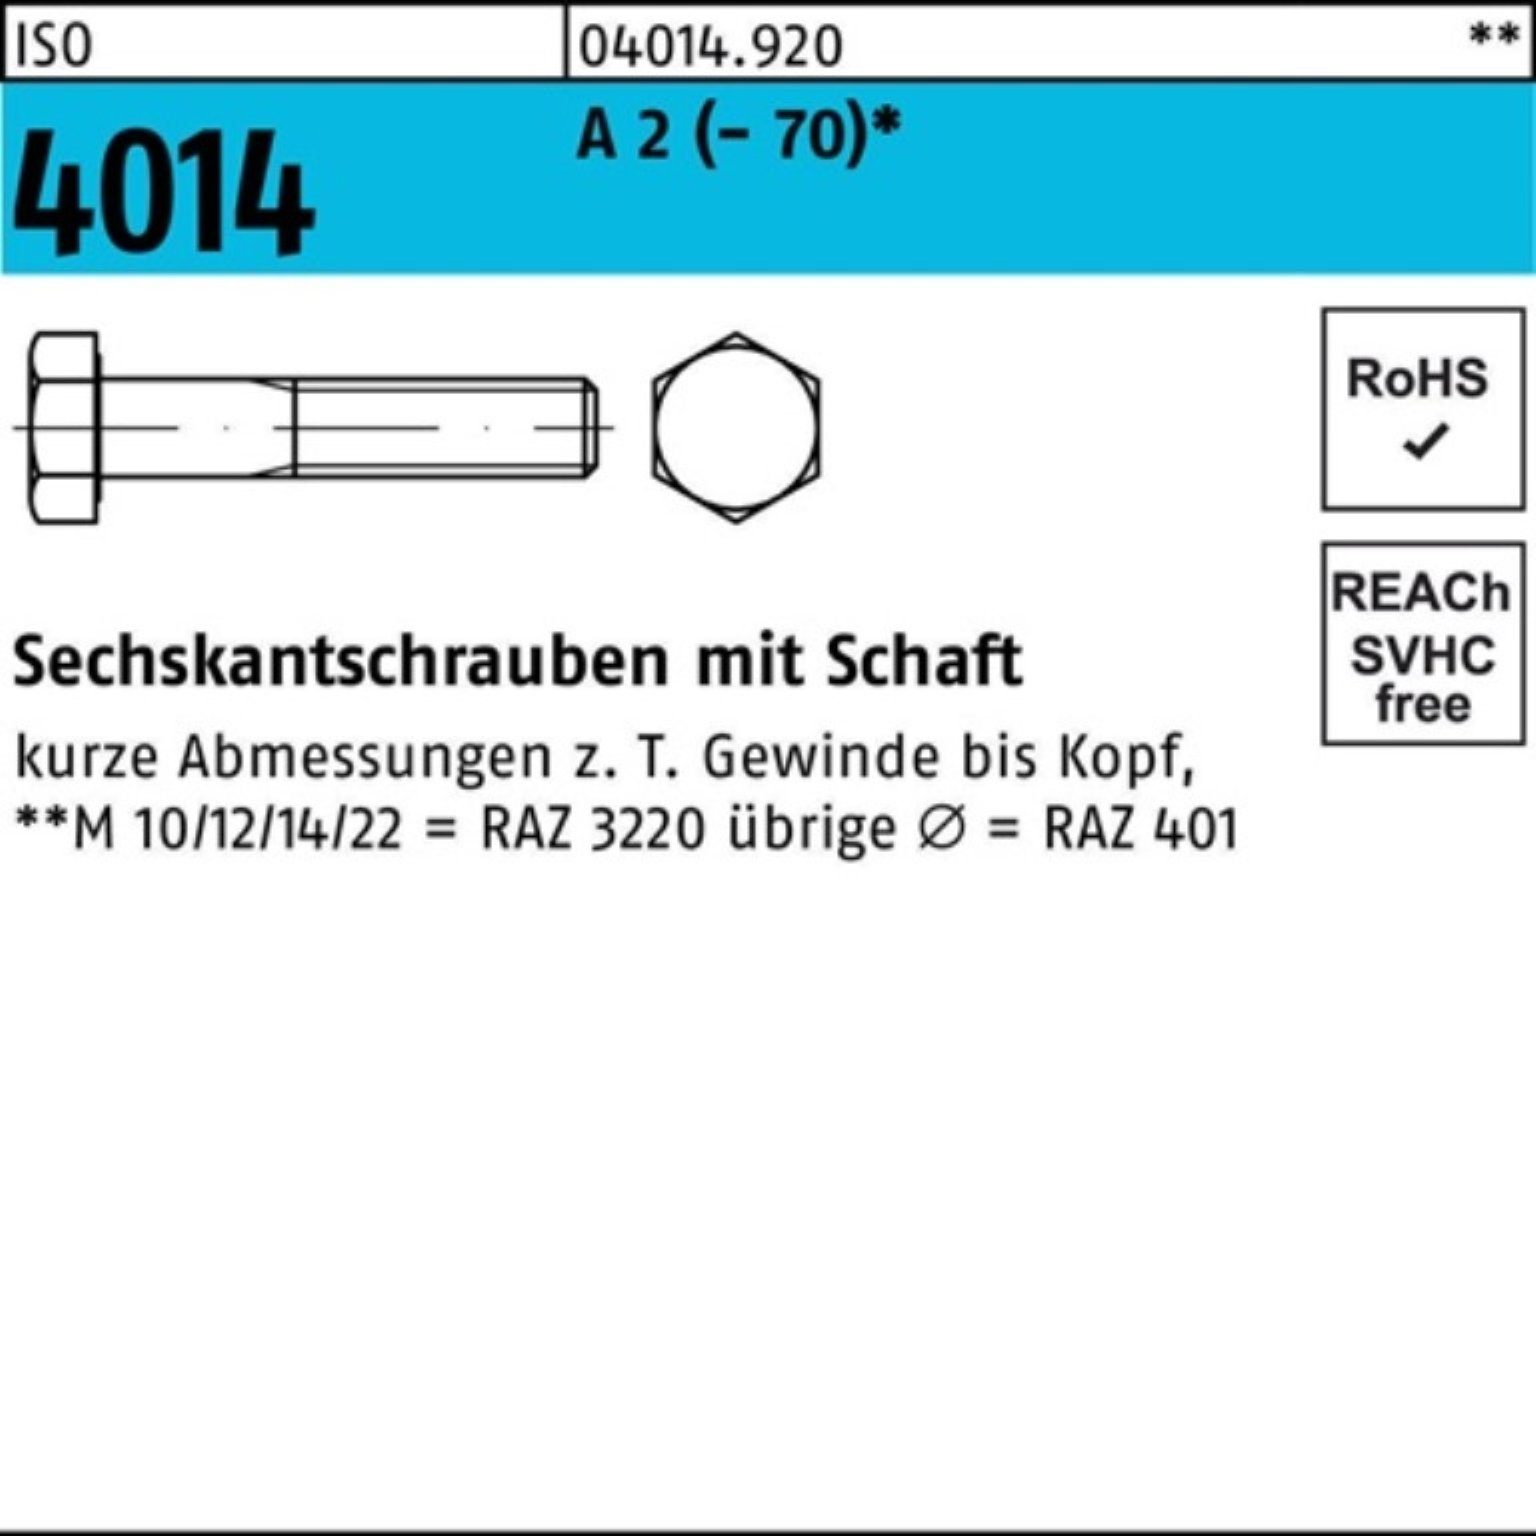 Bufab Sechskantschraube Pack A 4014 ISO (70) Sechskantschraube Schaft 100er M24x 2 1 St 140